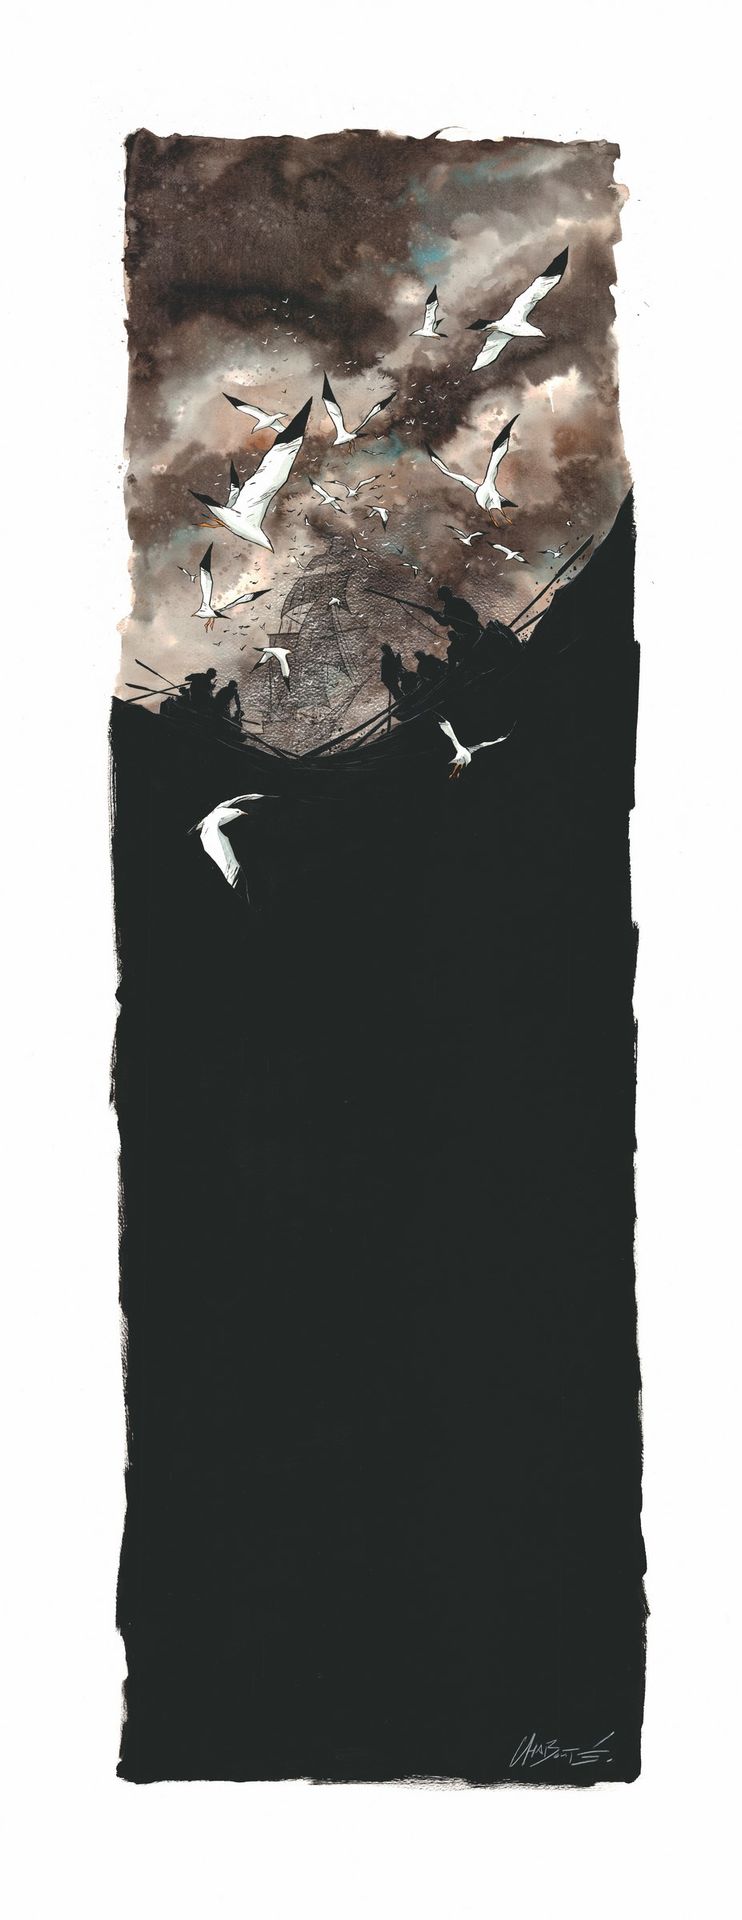 Chabouté, Christophe (1967-). 印度墨水、水彩和水洗的这幅崇高的原创插图取自《白鲸》的世界。在有纹理的画纸上构图。Chabouté在&hellip;